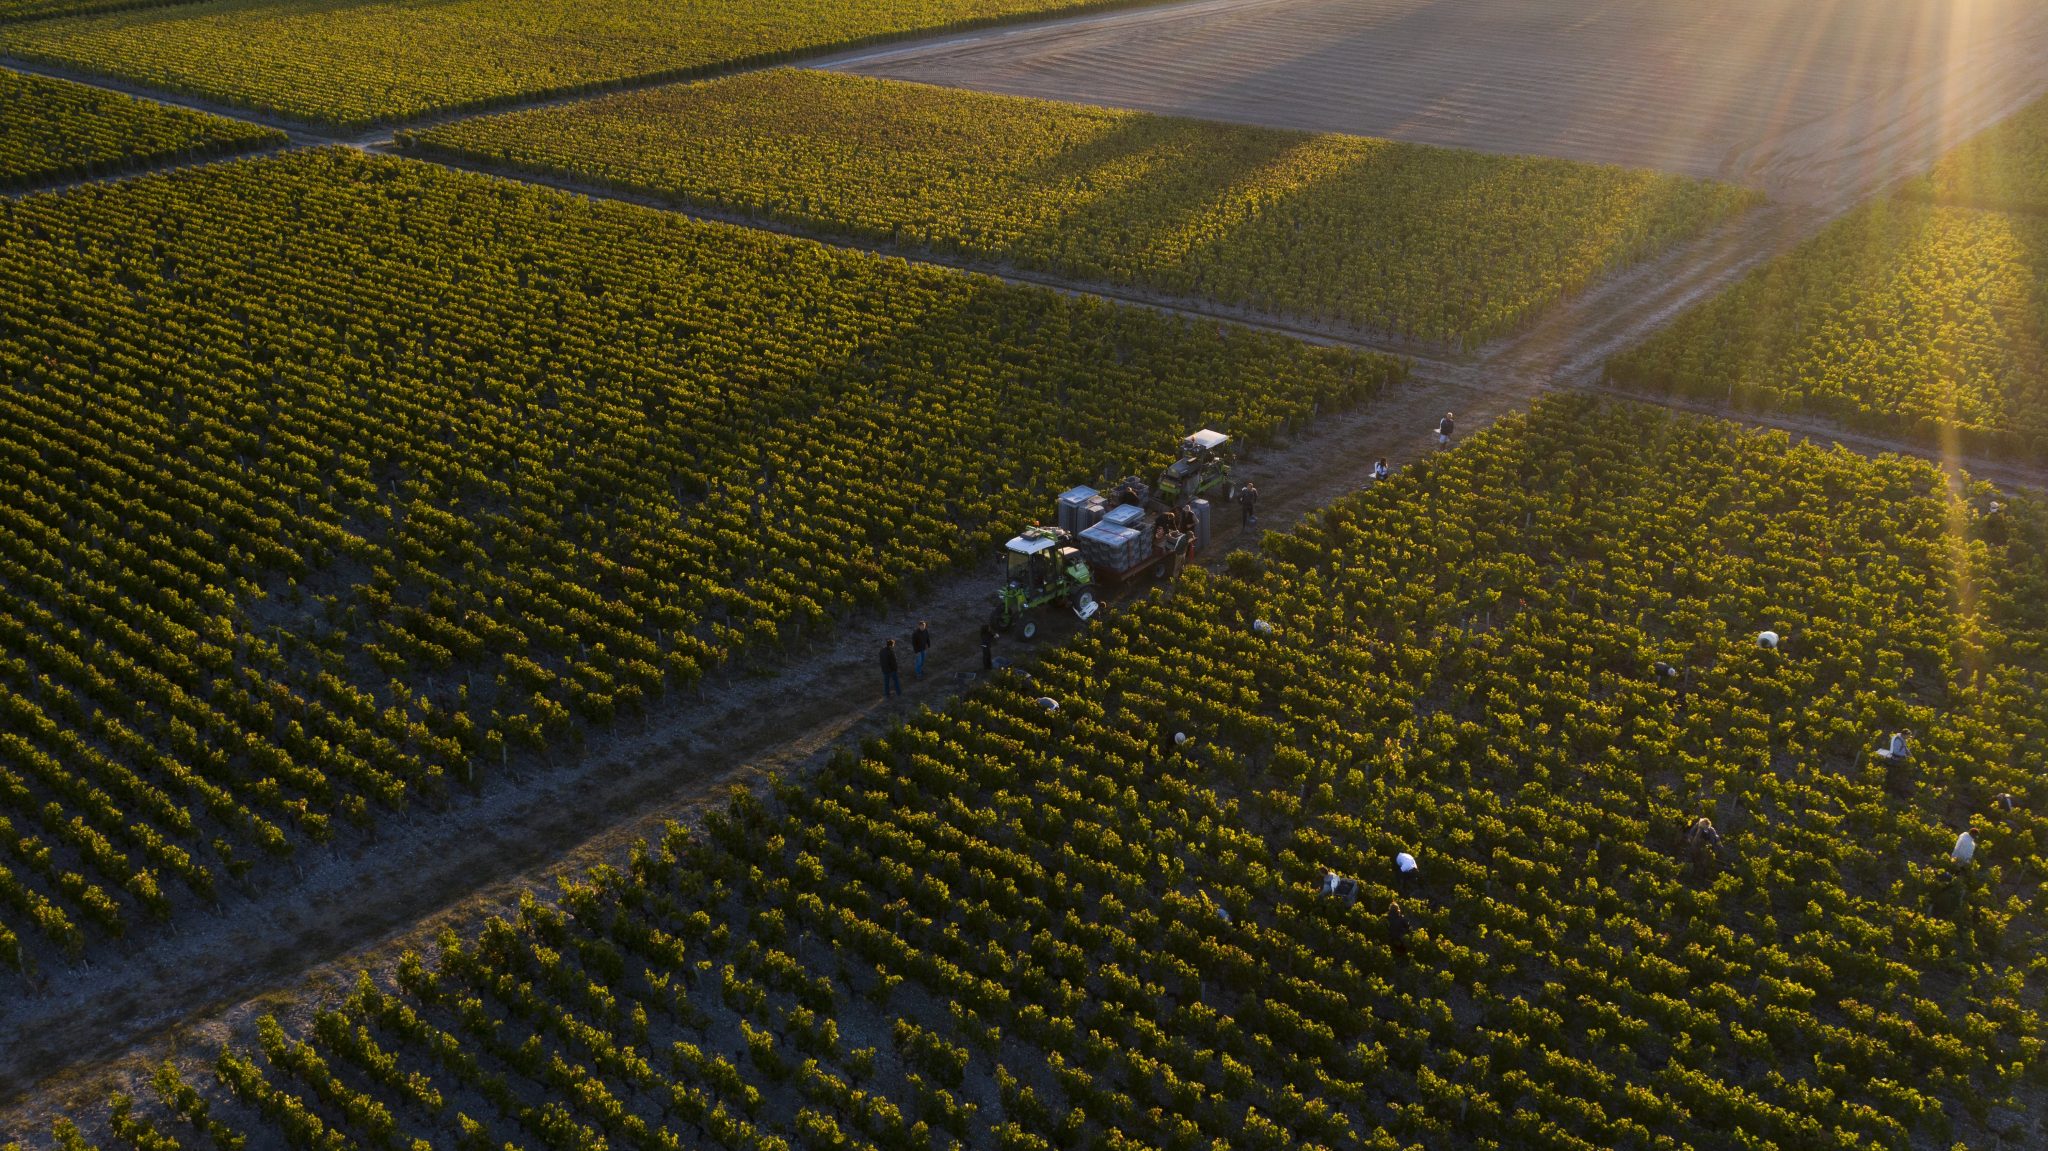 Bordeaux en primeur 2021 fields of grapes 